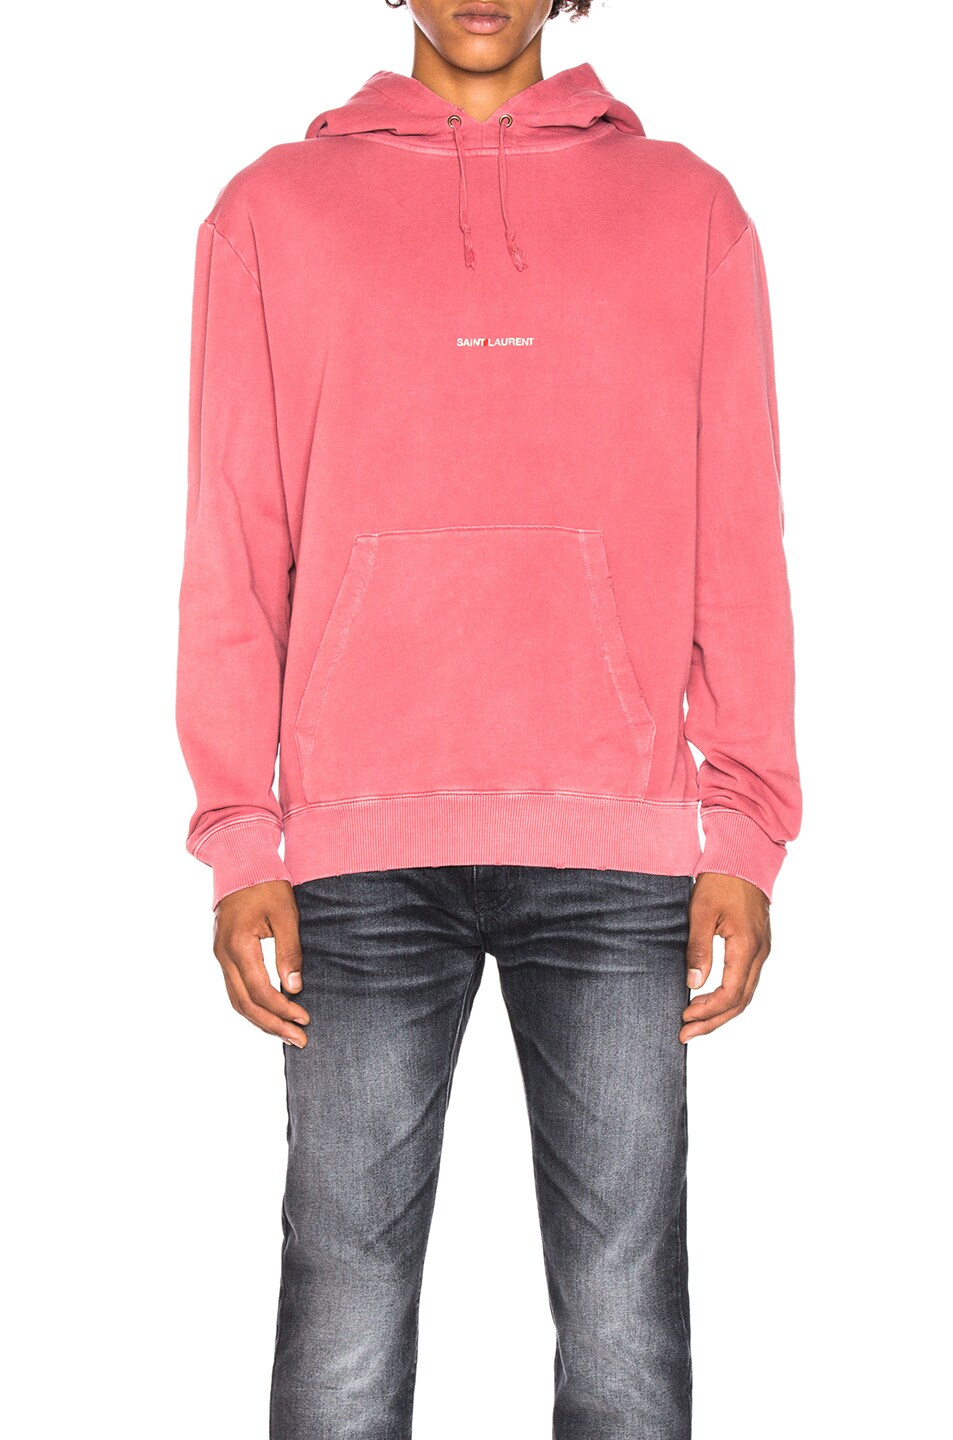 saint laurent pink sweatshirt